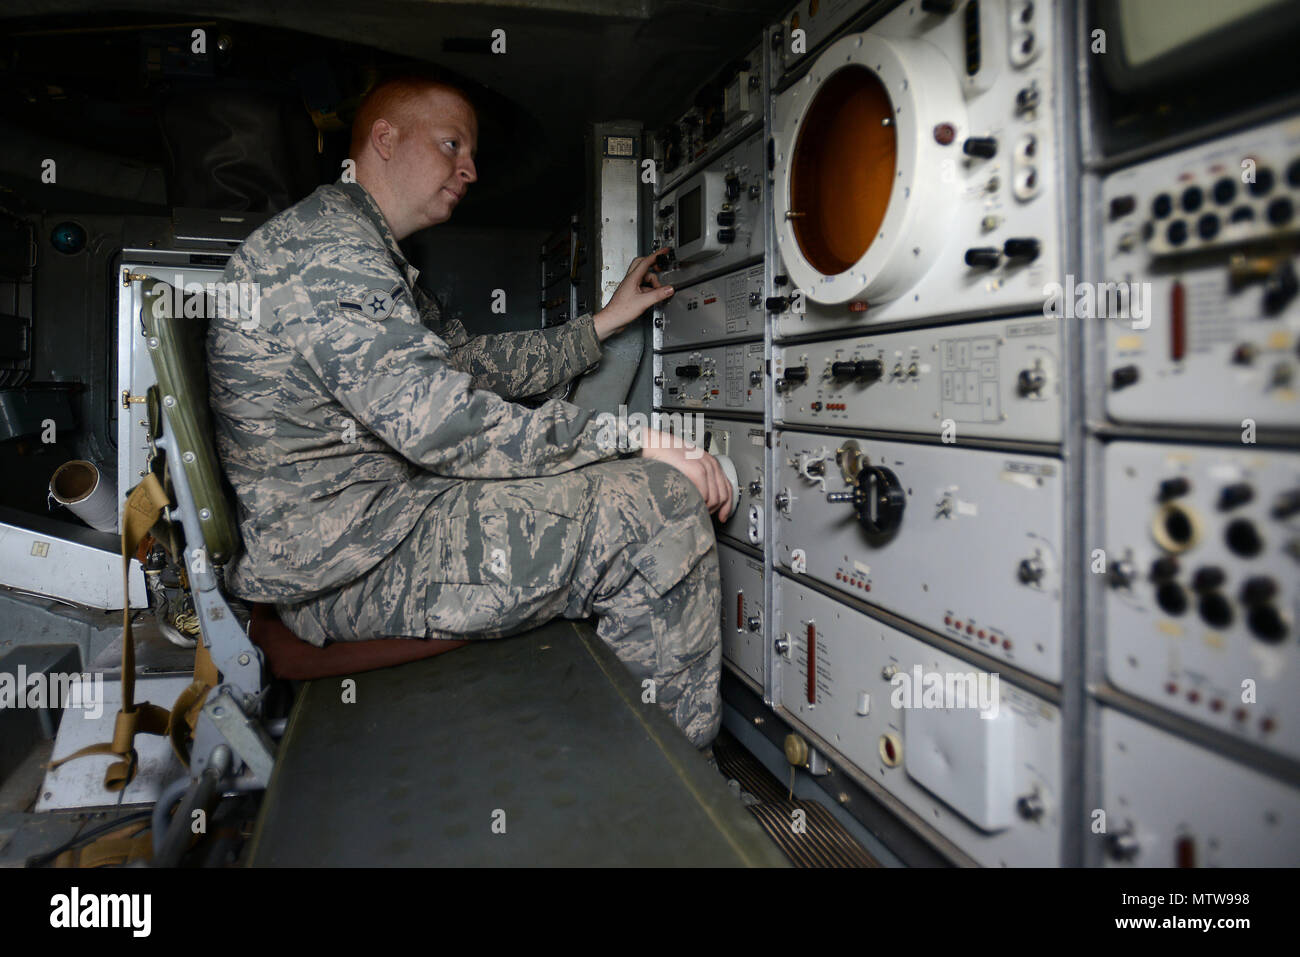 Aviador de la Fuerza Aérea de EE.UU. Jackson galo, 20º Escuadrón de Mantenimiento de componentes de los sistemas de salida de las tripulaciones aprendiz, se sienta dentro de un SA-8 Gecko rodillo iniciador "Tierra" sistema de misiles tierra-aire en la base de la fuerza aérea Shaw, Carolina del Sur, el 20 de enero de 2017. La SAM fue proporcionado para la sesión informativa por parte de la Agencia de Inteligencia de Defensa de Misiles del Centro de Inteligencia Espacial, y la 46ª Escuadrilla de prueba asignado a Eglin AFB, Florida (EE.UU. Foto de la fuerza aérea por Aerotécnico de Primera Clase Kelsey Tucker) Foto de stock